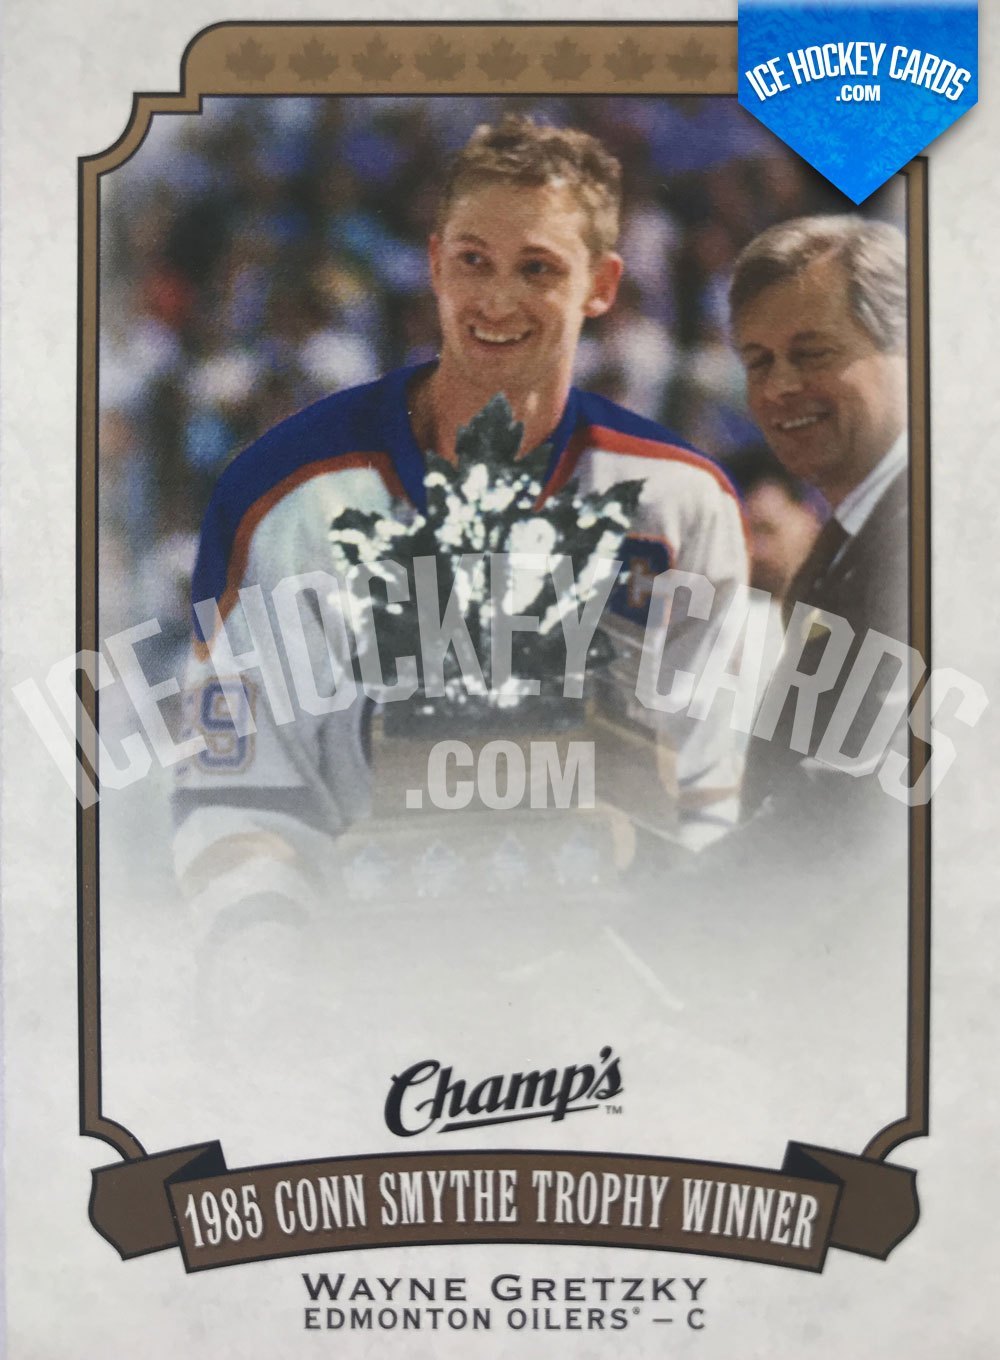 Upper Deck - Champs 15-16 - Wayne Gretzky 1985 Conn Smythe Trophy Winner